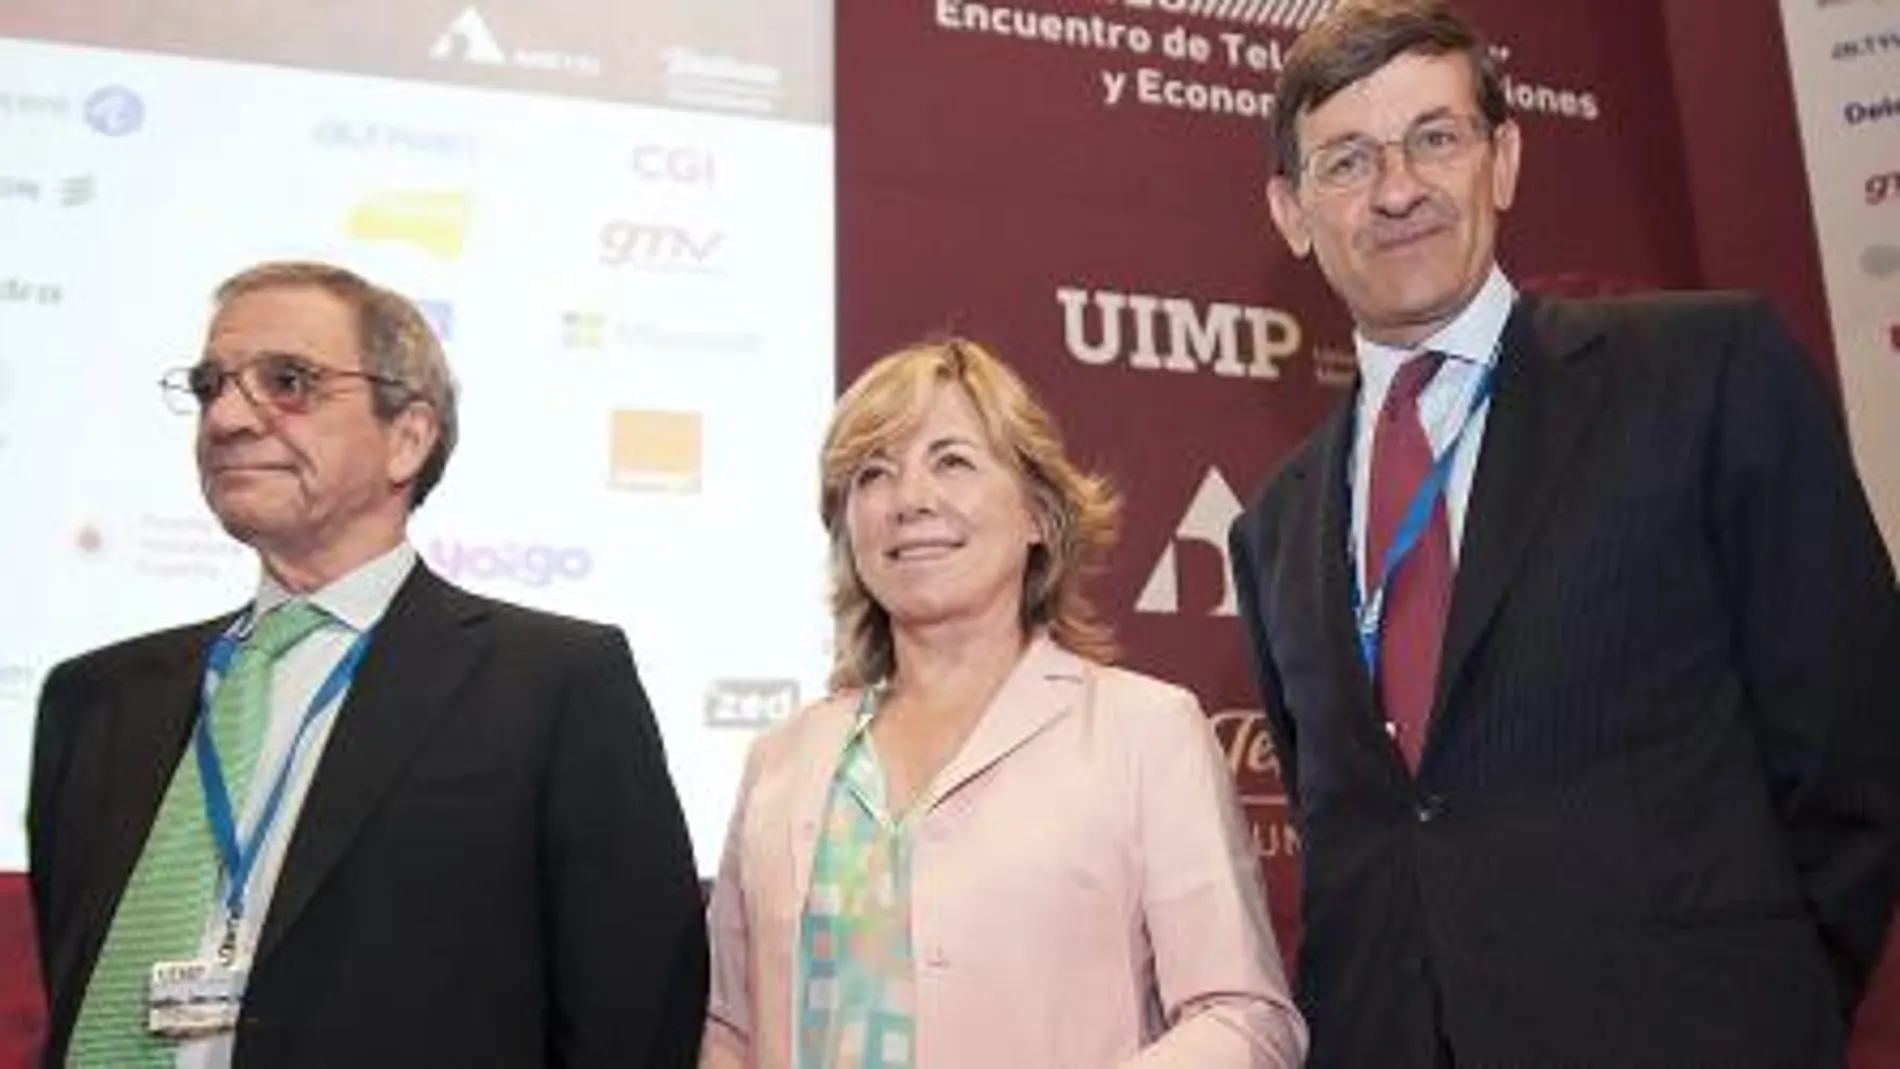 César Alierta, presidente de Telefónica, Pilar del Castillo, eurodiputada y presidenta de la Fundación Europea de Internet, y Vittorio Colao, consejero de Vodafone.